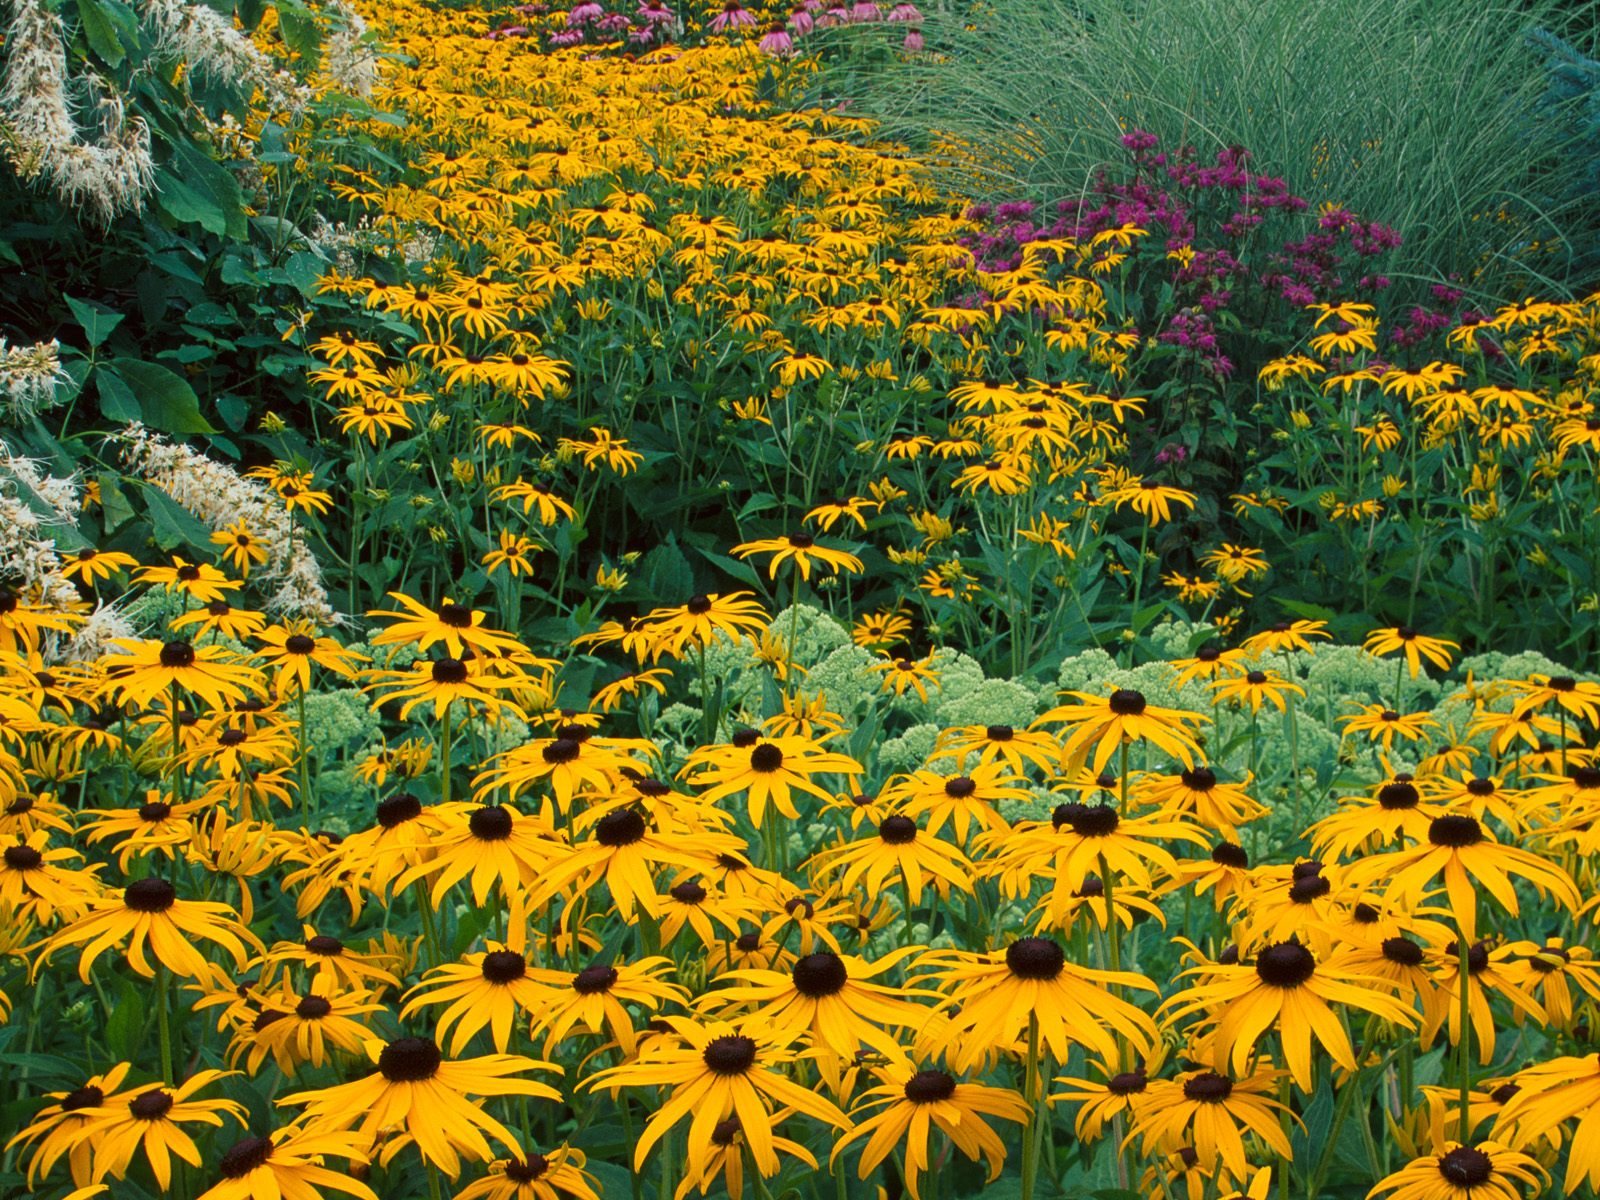 Vivid field of Black Eyed Susan flowers.